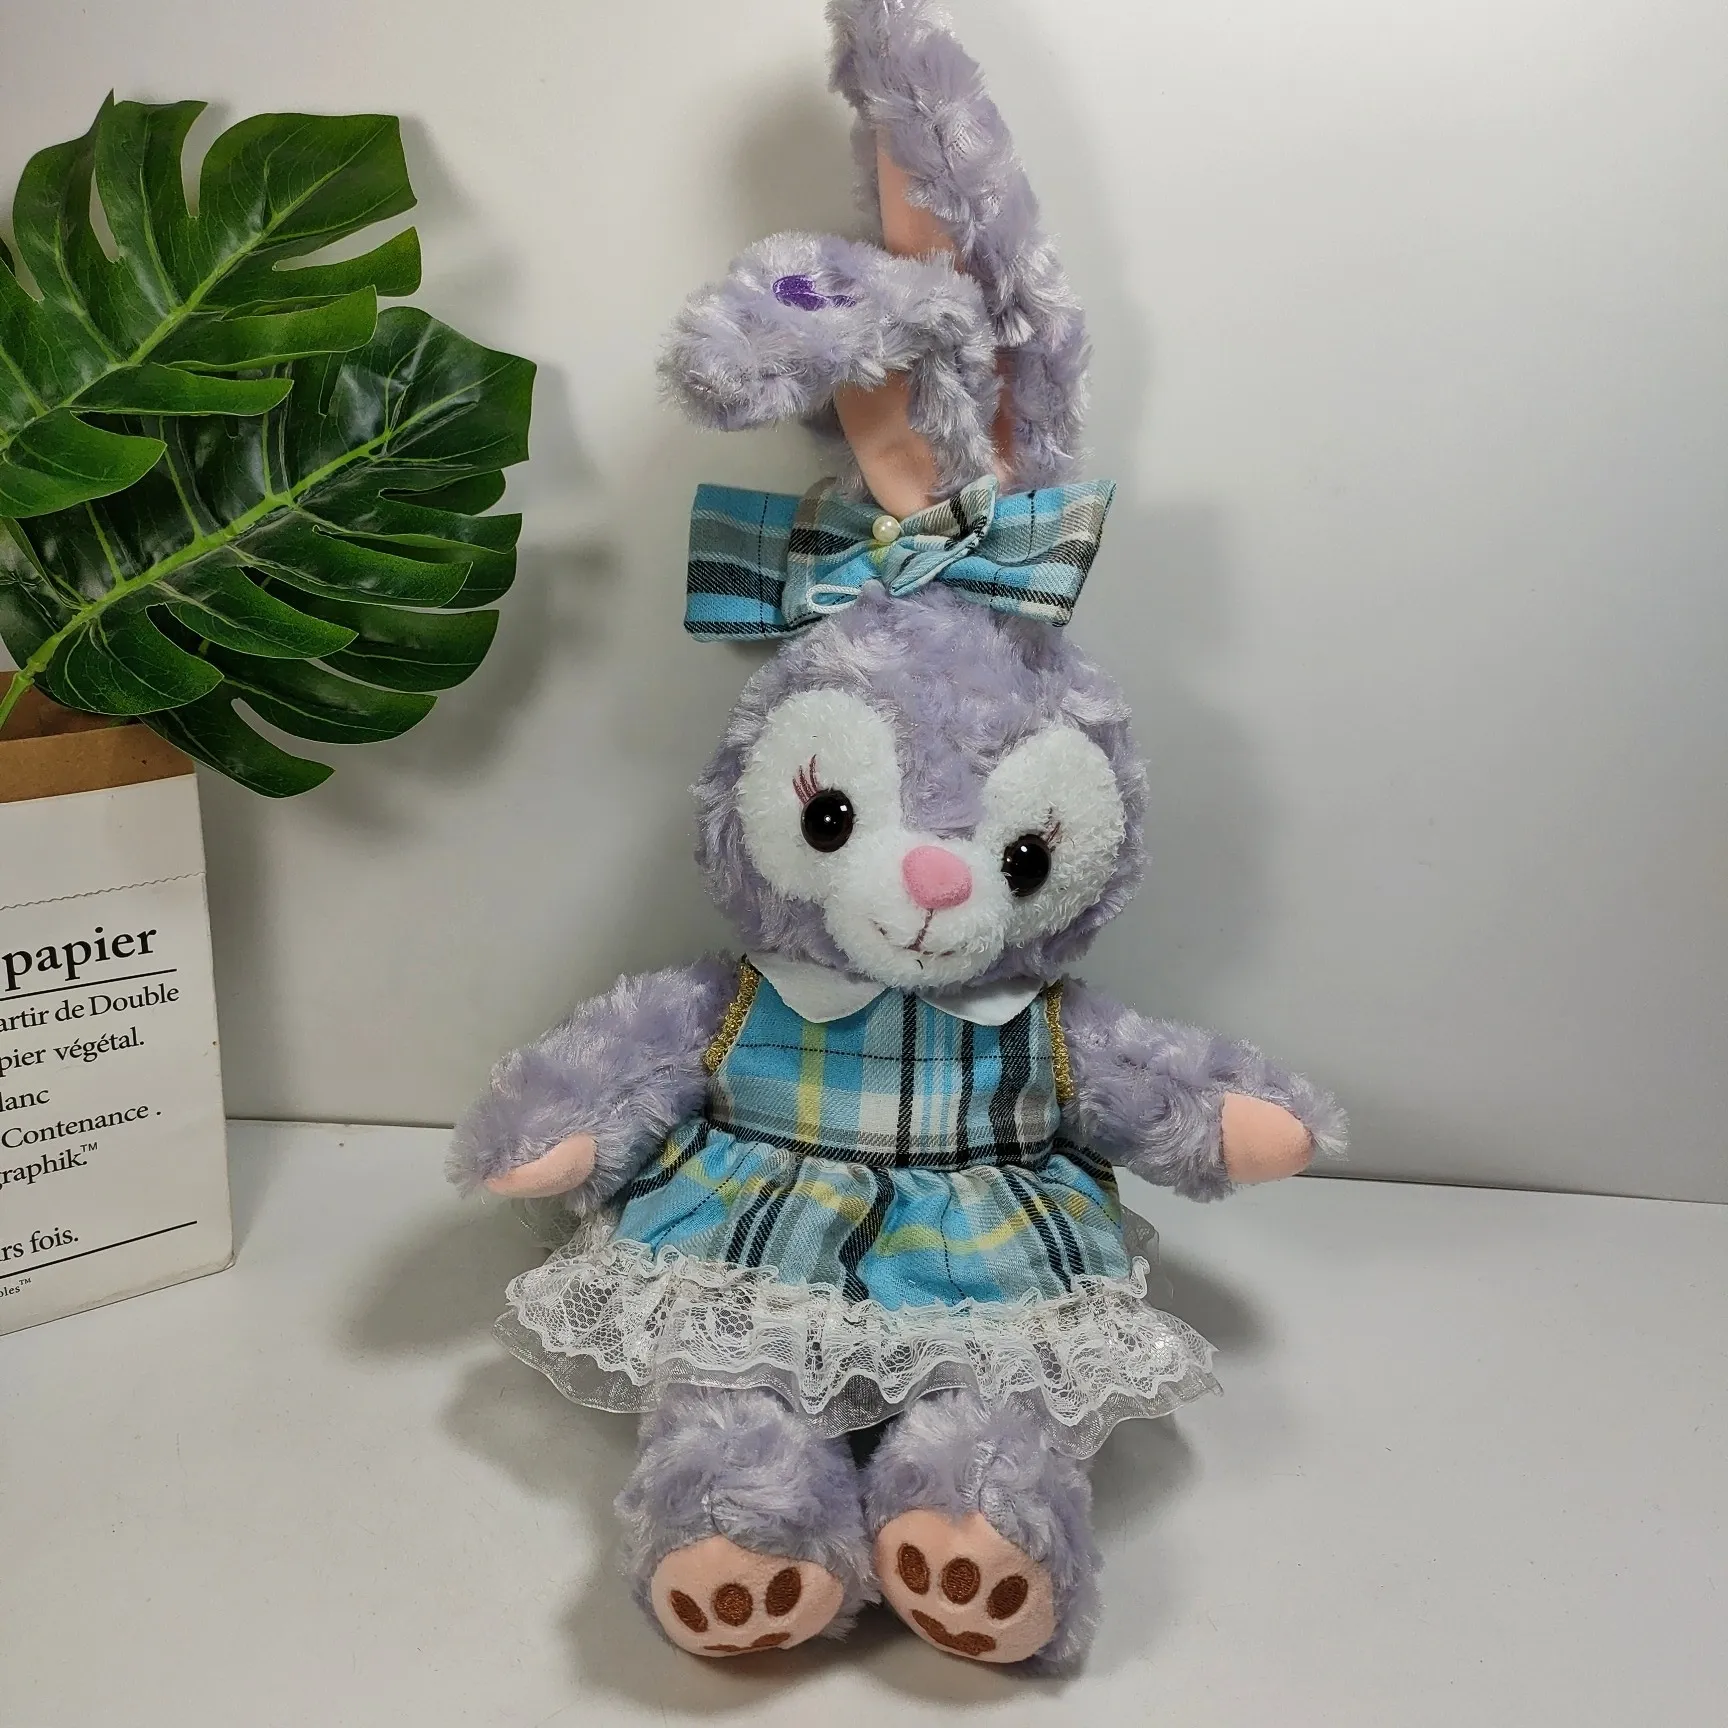 Śliczna kratona spódnica królika Plush Toys dla dzieci gry towarzysze wakacyjne dzieci prezent na pchanie zwierząt dekoracje pokoju